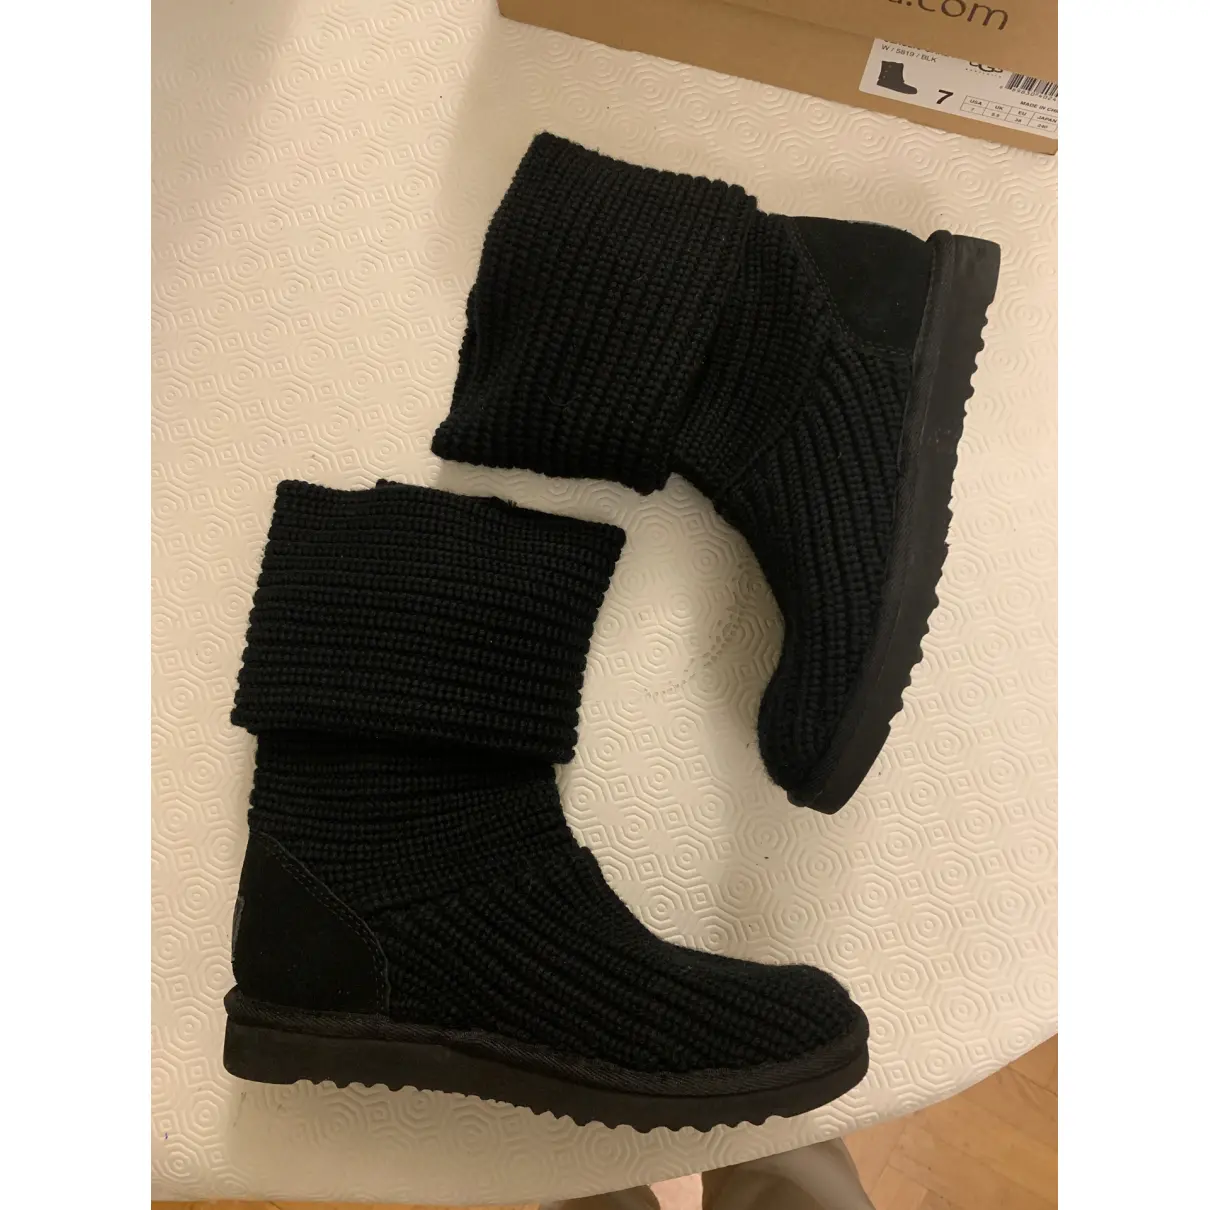 Buy Ugg Tweed boots online